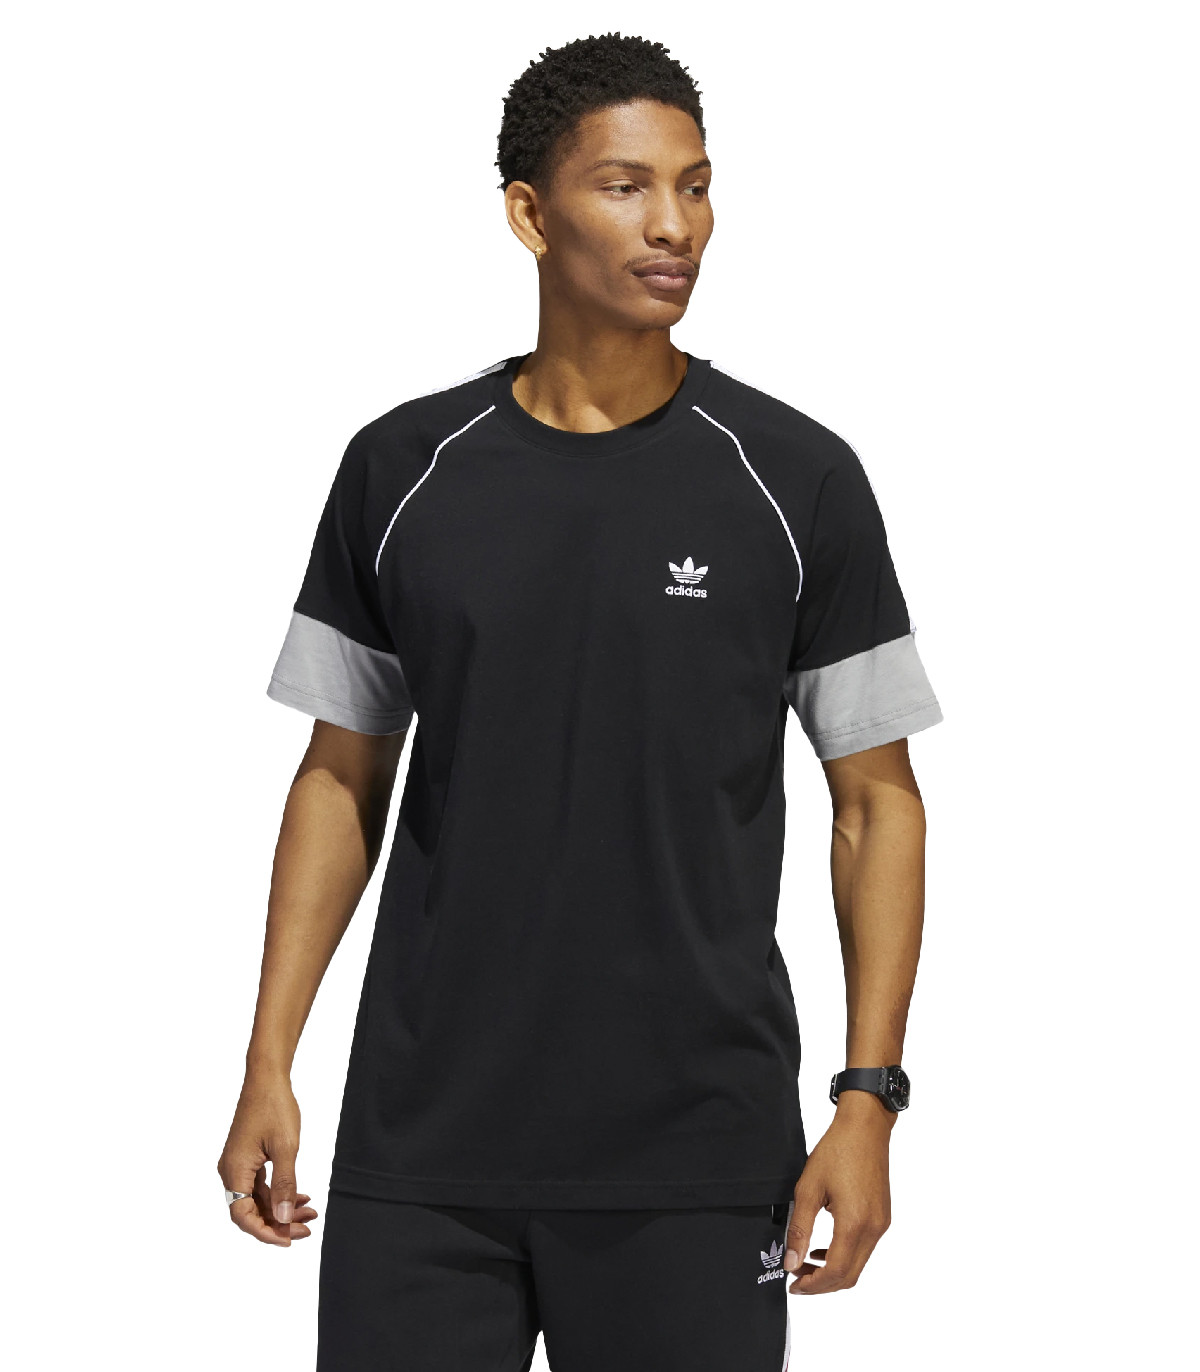 adidas Originals - Camiseta SST - Negro